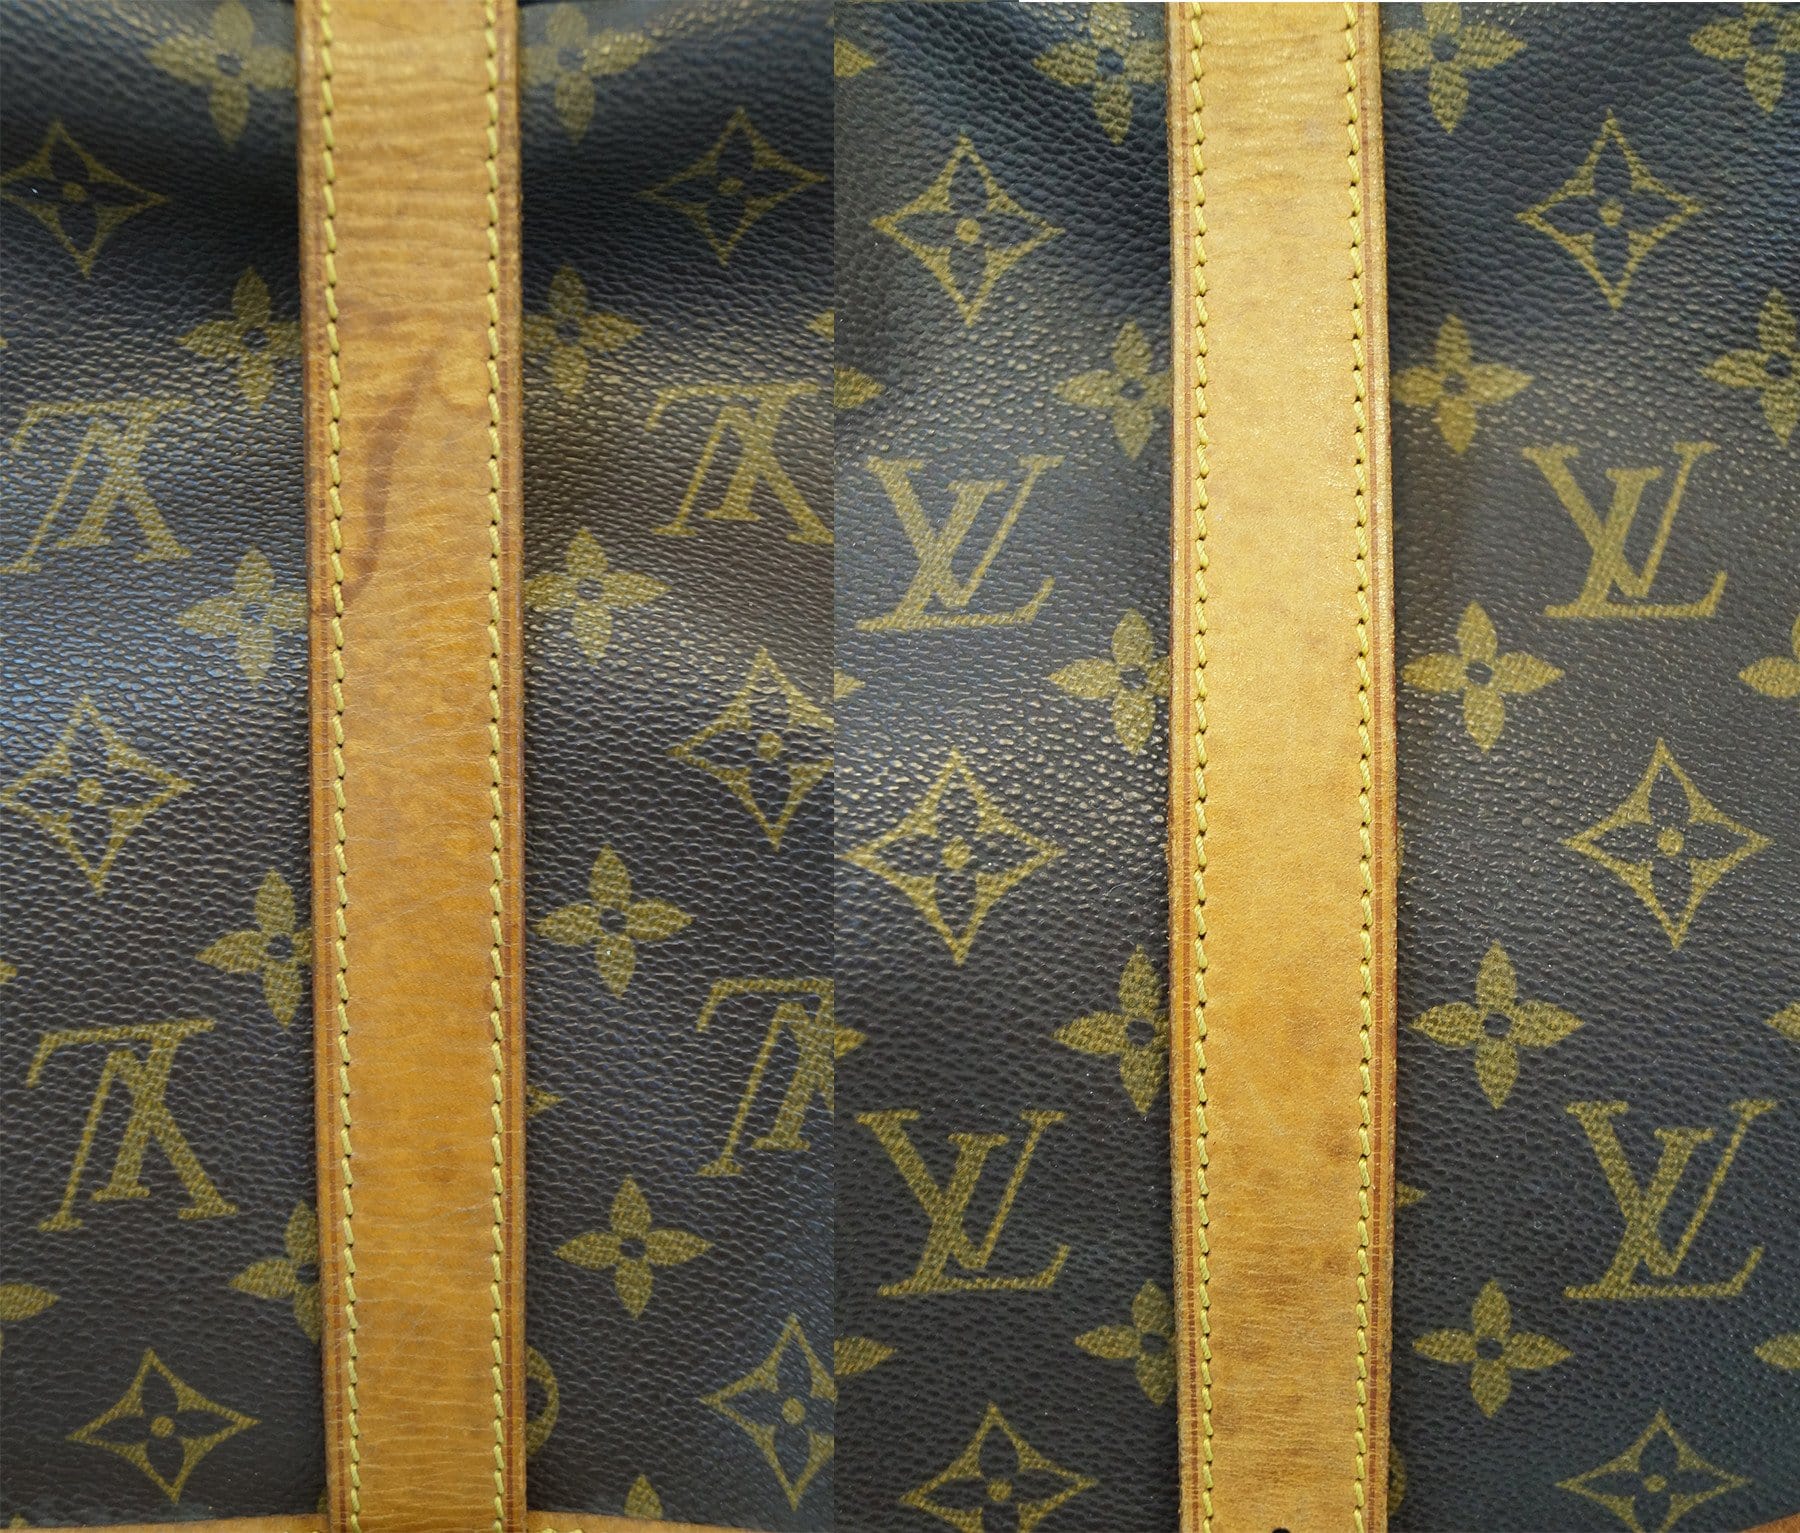 Louis Vuitton Monogram Canvas Saumur 35 Bag – Luxuria & Co.